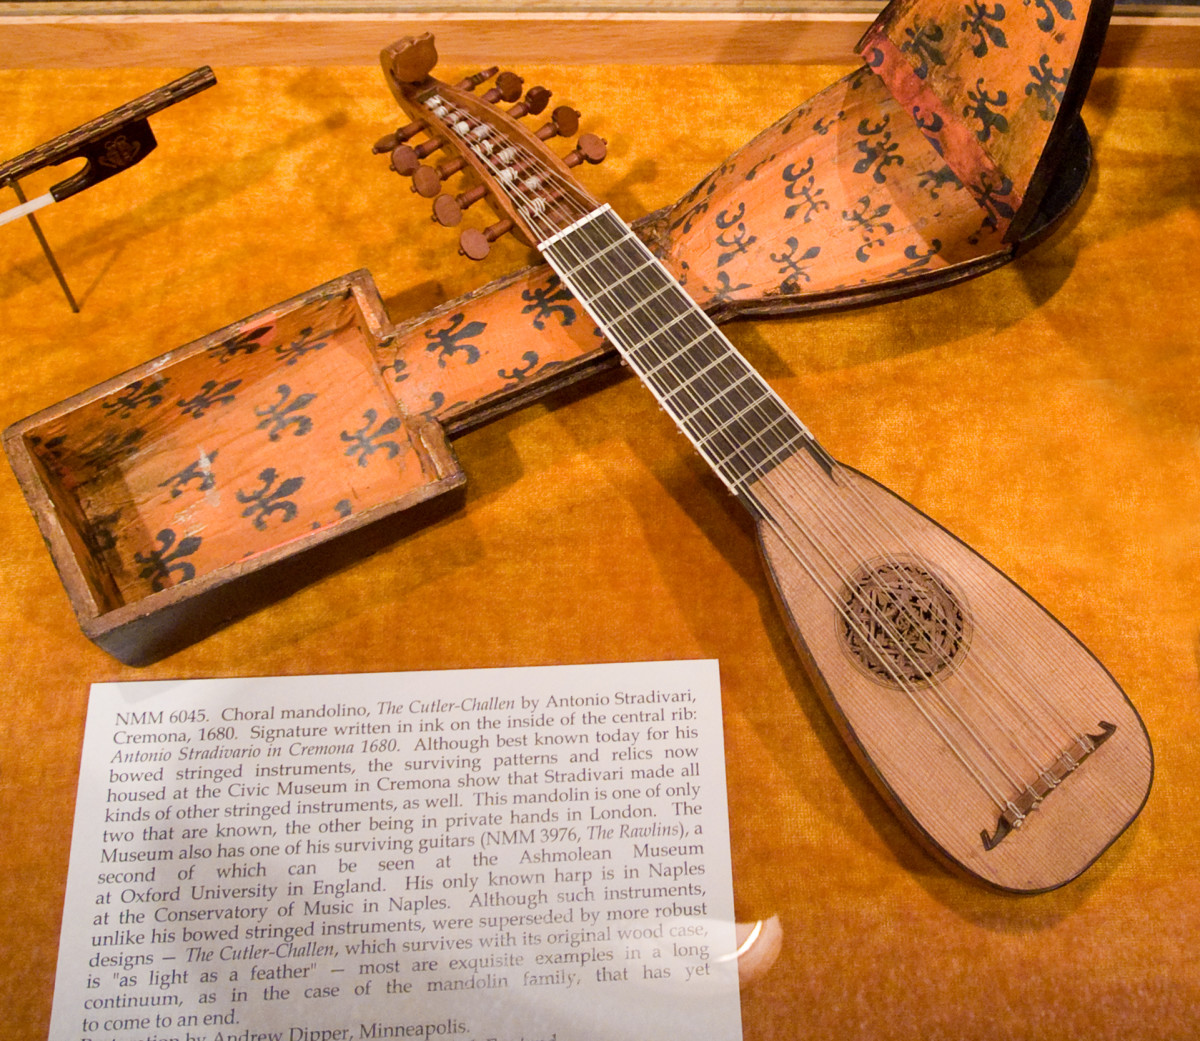 Stradivarius mandolin